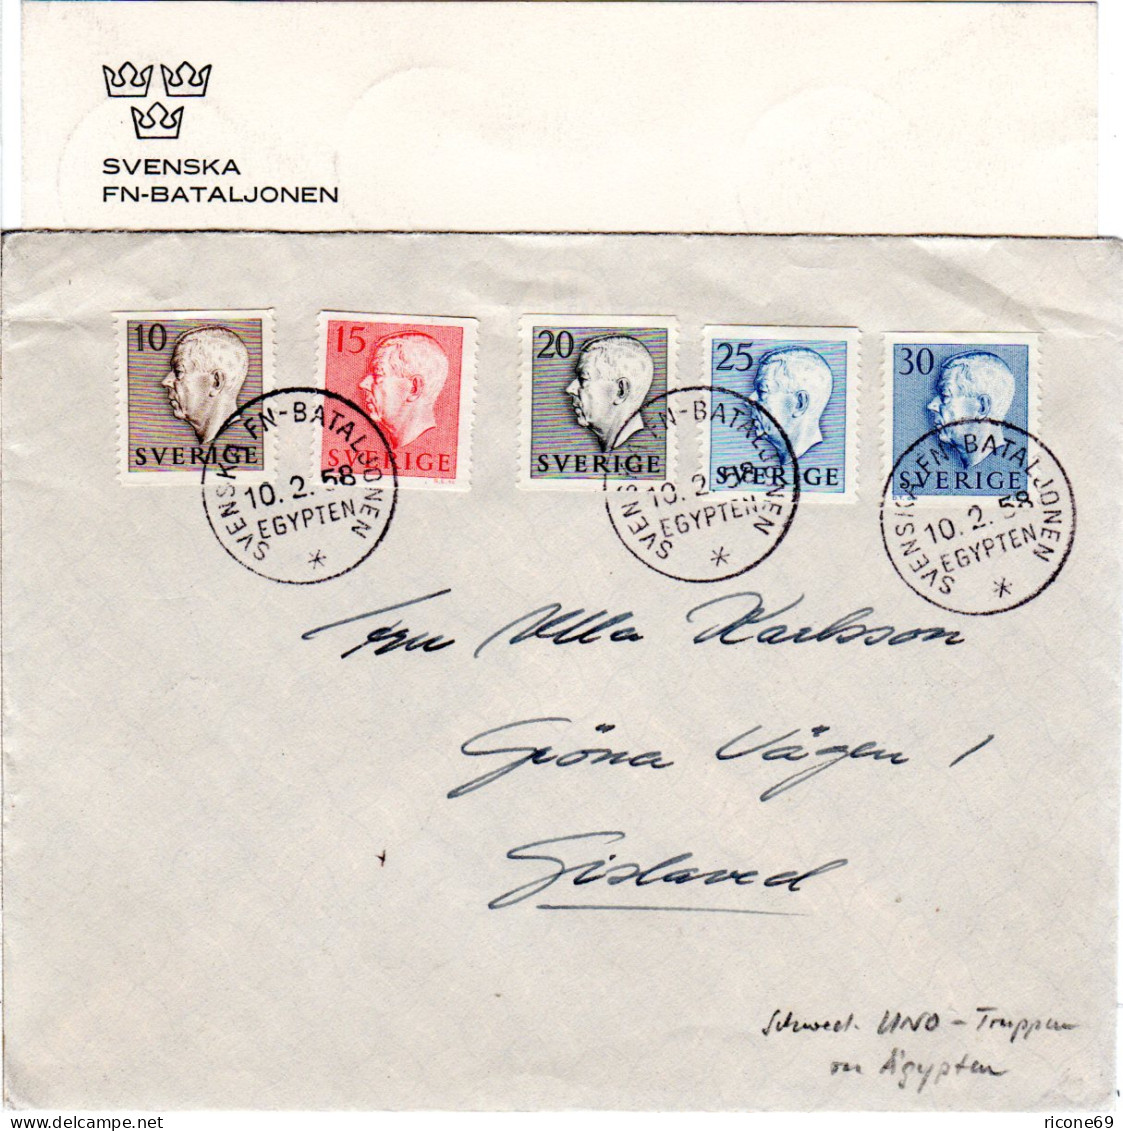 Schweden 1958, SVENSKA FN BATALJONEN EGYPTEN, Brief M. 5 Marken - Covers & Documents